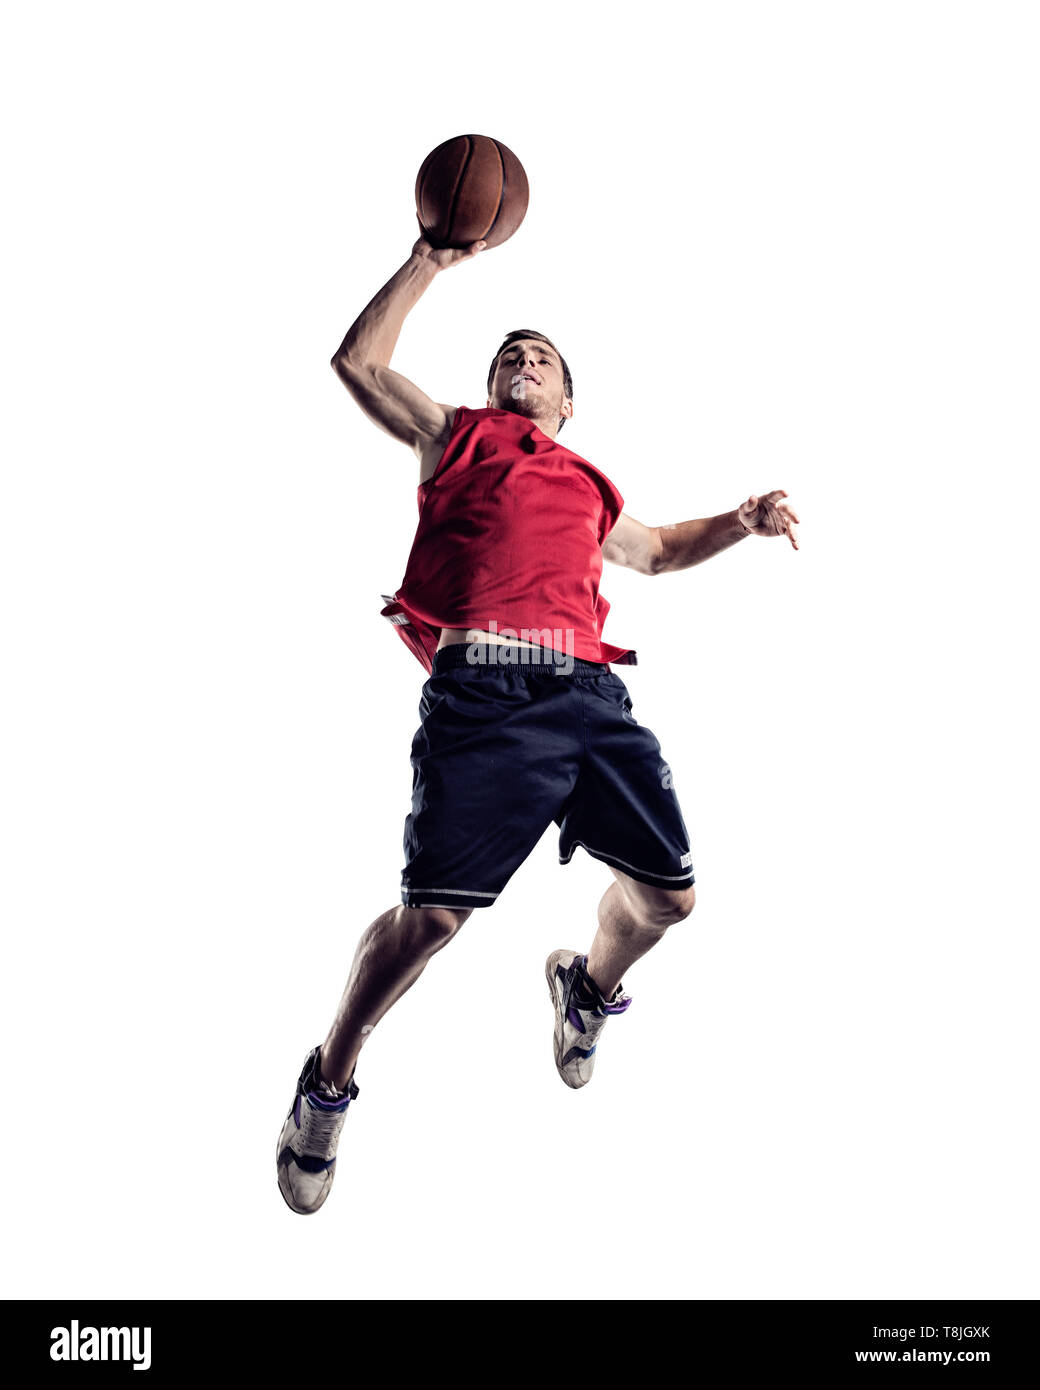 Giocatore di basket in azione isolata su sfondo bianco Foto Stock